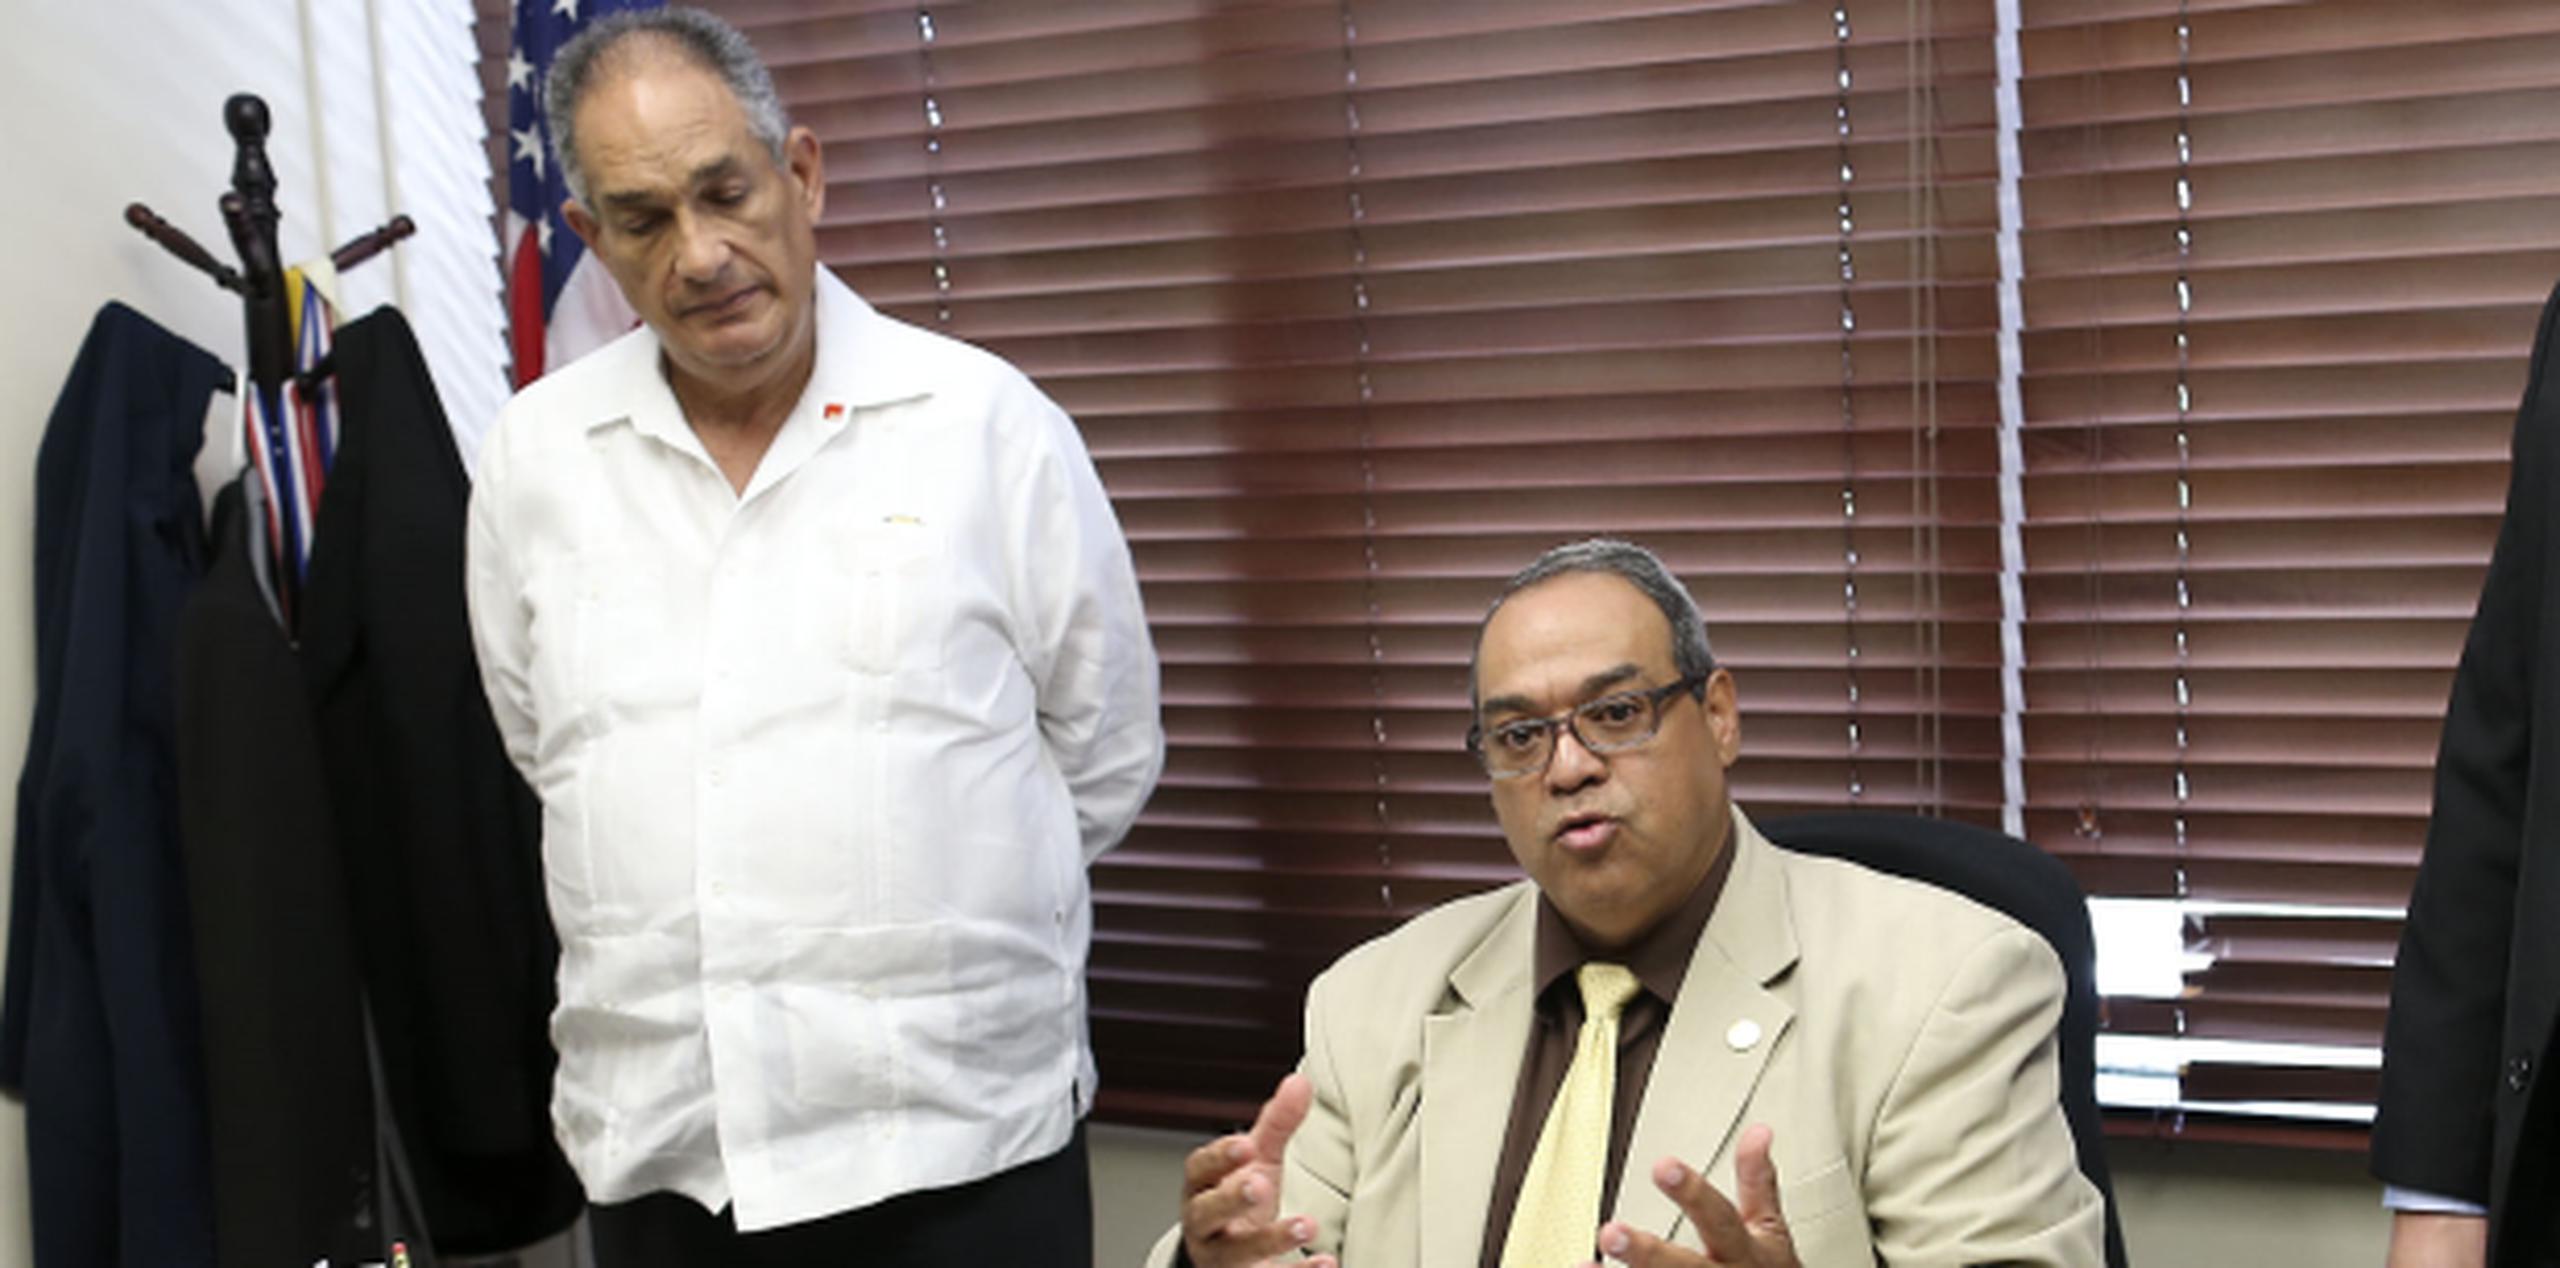 Julio Solier, presidente de la Asociación de Alzheimer de Puerto Rico, apoyó los proyectos radicados por el senador Ángel "Chayanne" Martínez. (JOSE.REYES@GFRMEDIA.COM)
